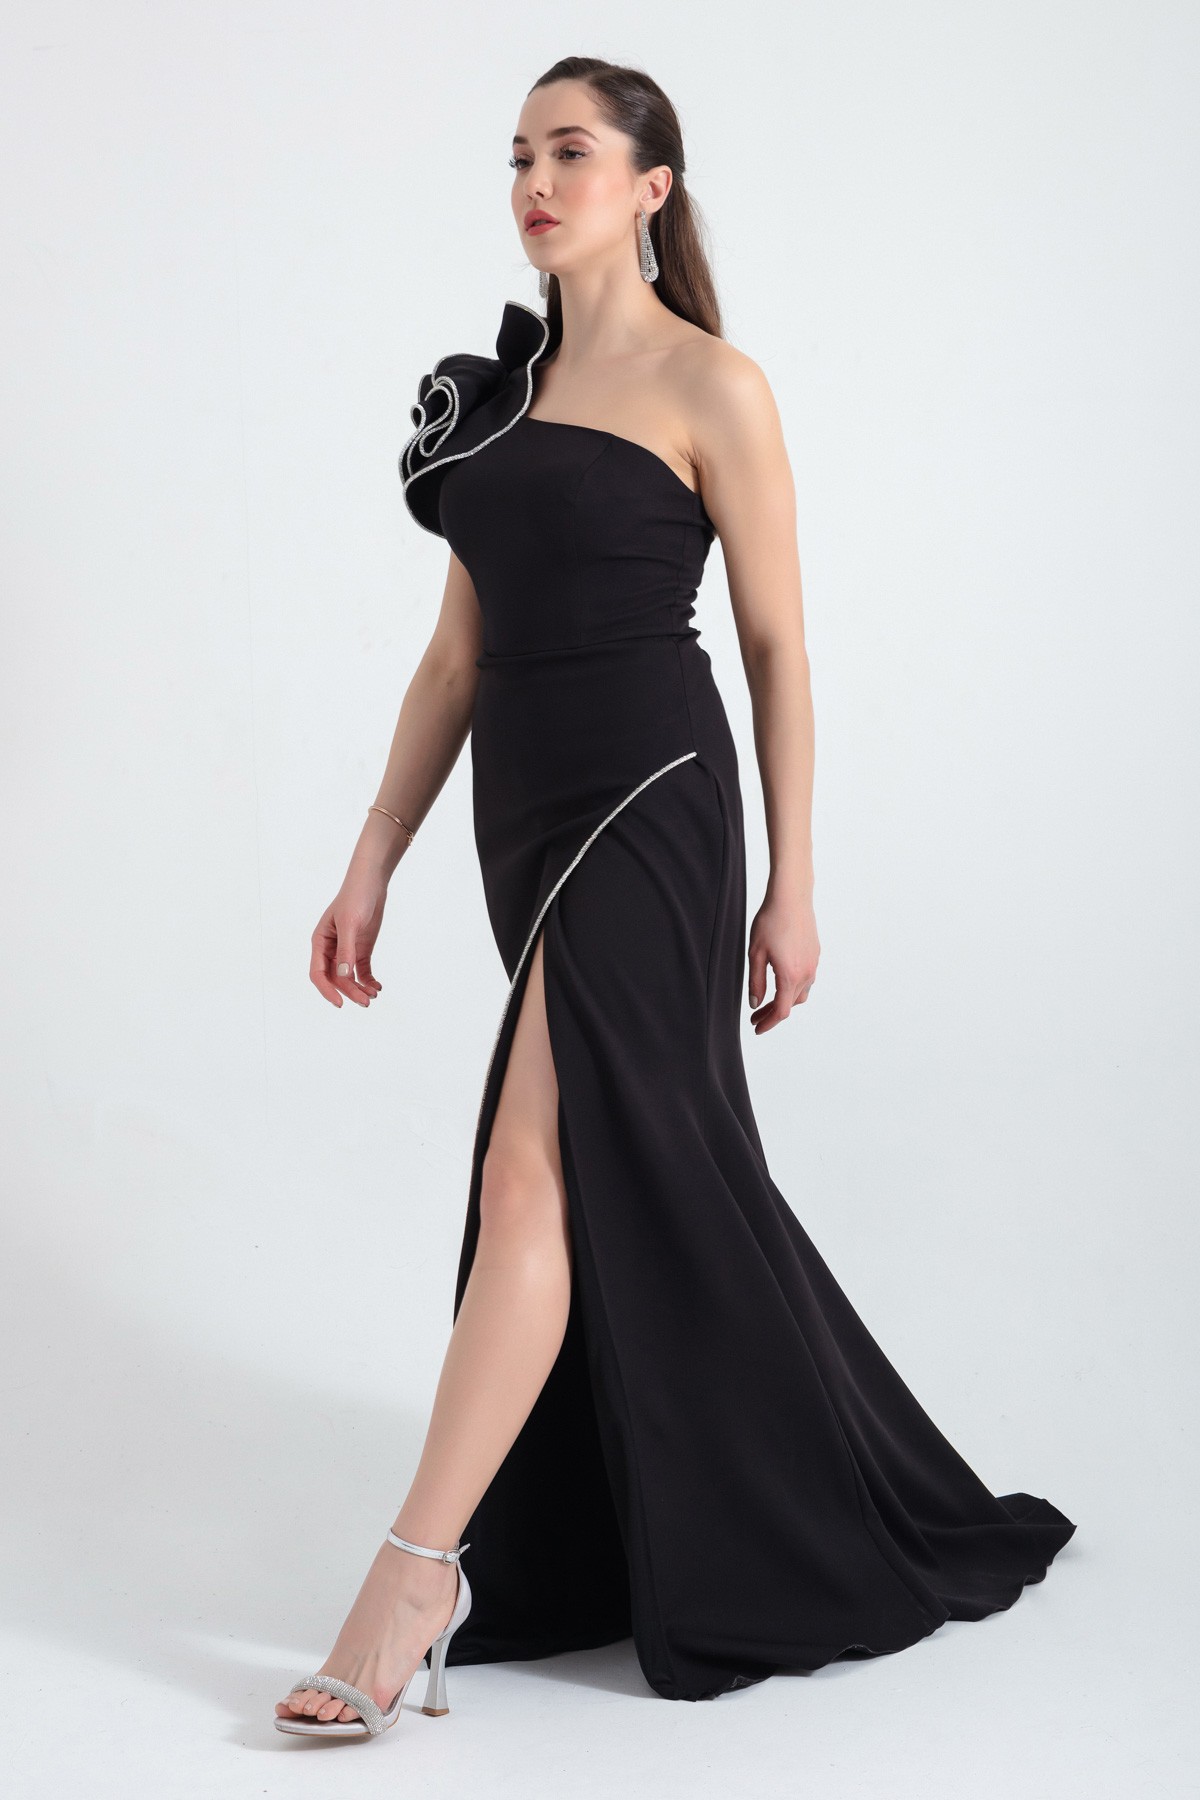 Kadın Tek Omuzlu Yırtmaçlı Uzun Abiye Elbise - Siyah